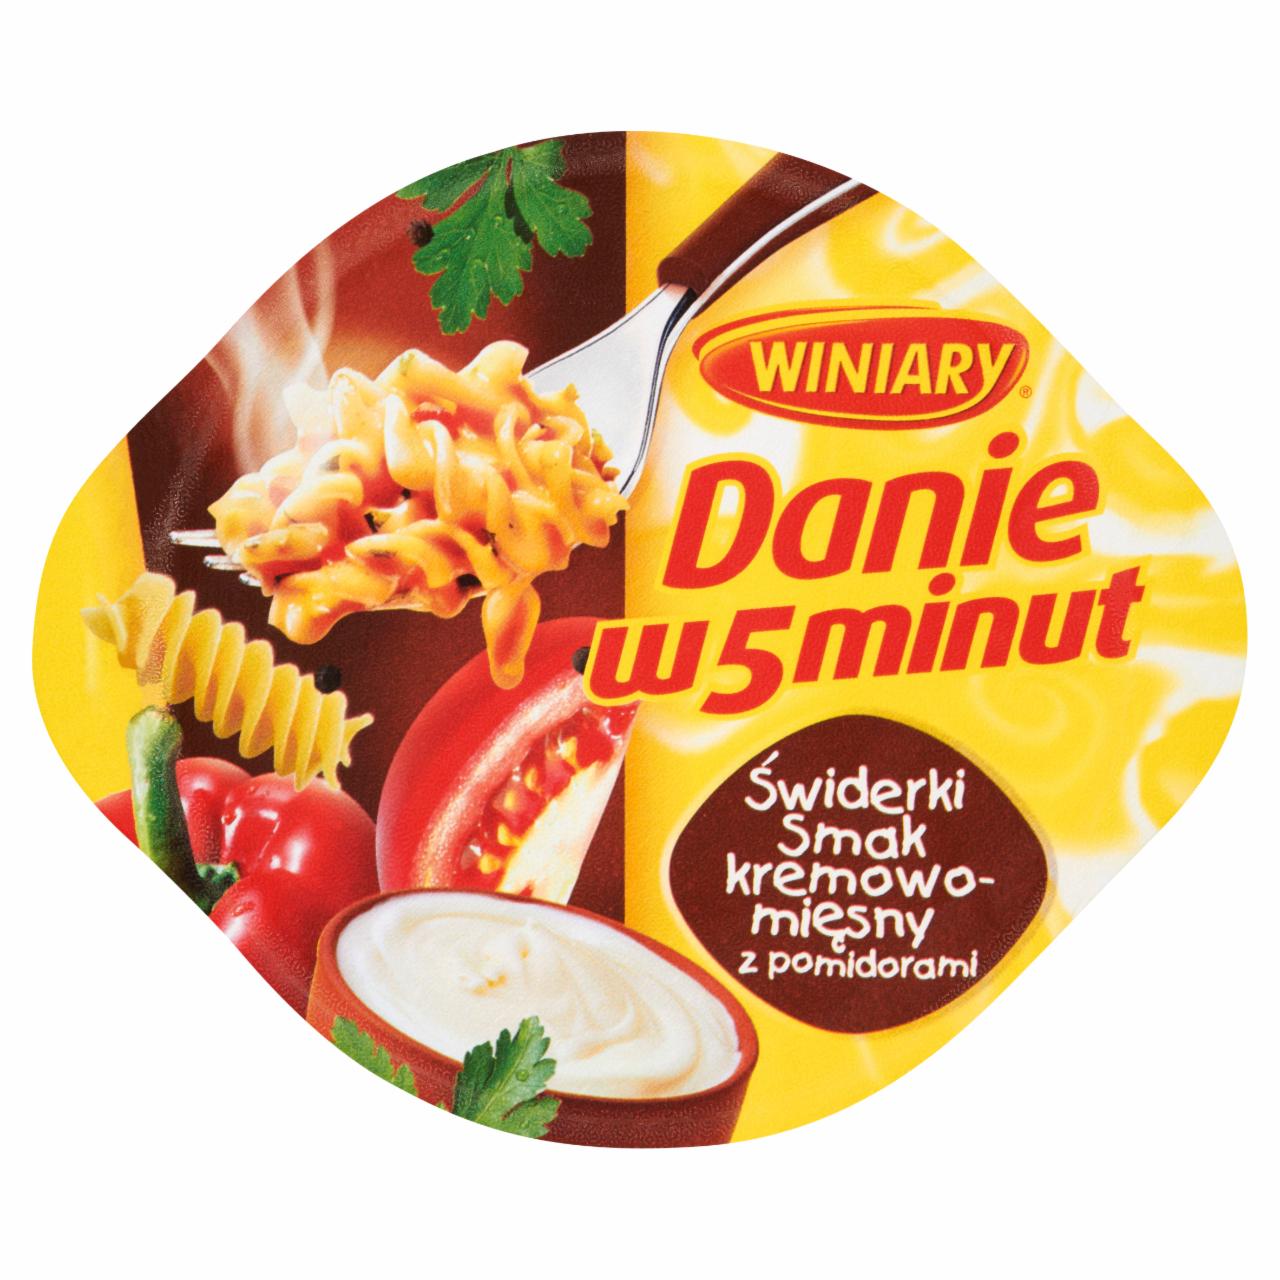 Zdjęcia - Winiary Danie w 5 minut Świderki smak kremowo-mięsny z pomidorami 60 g